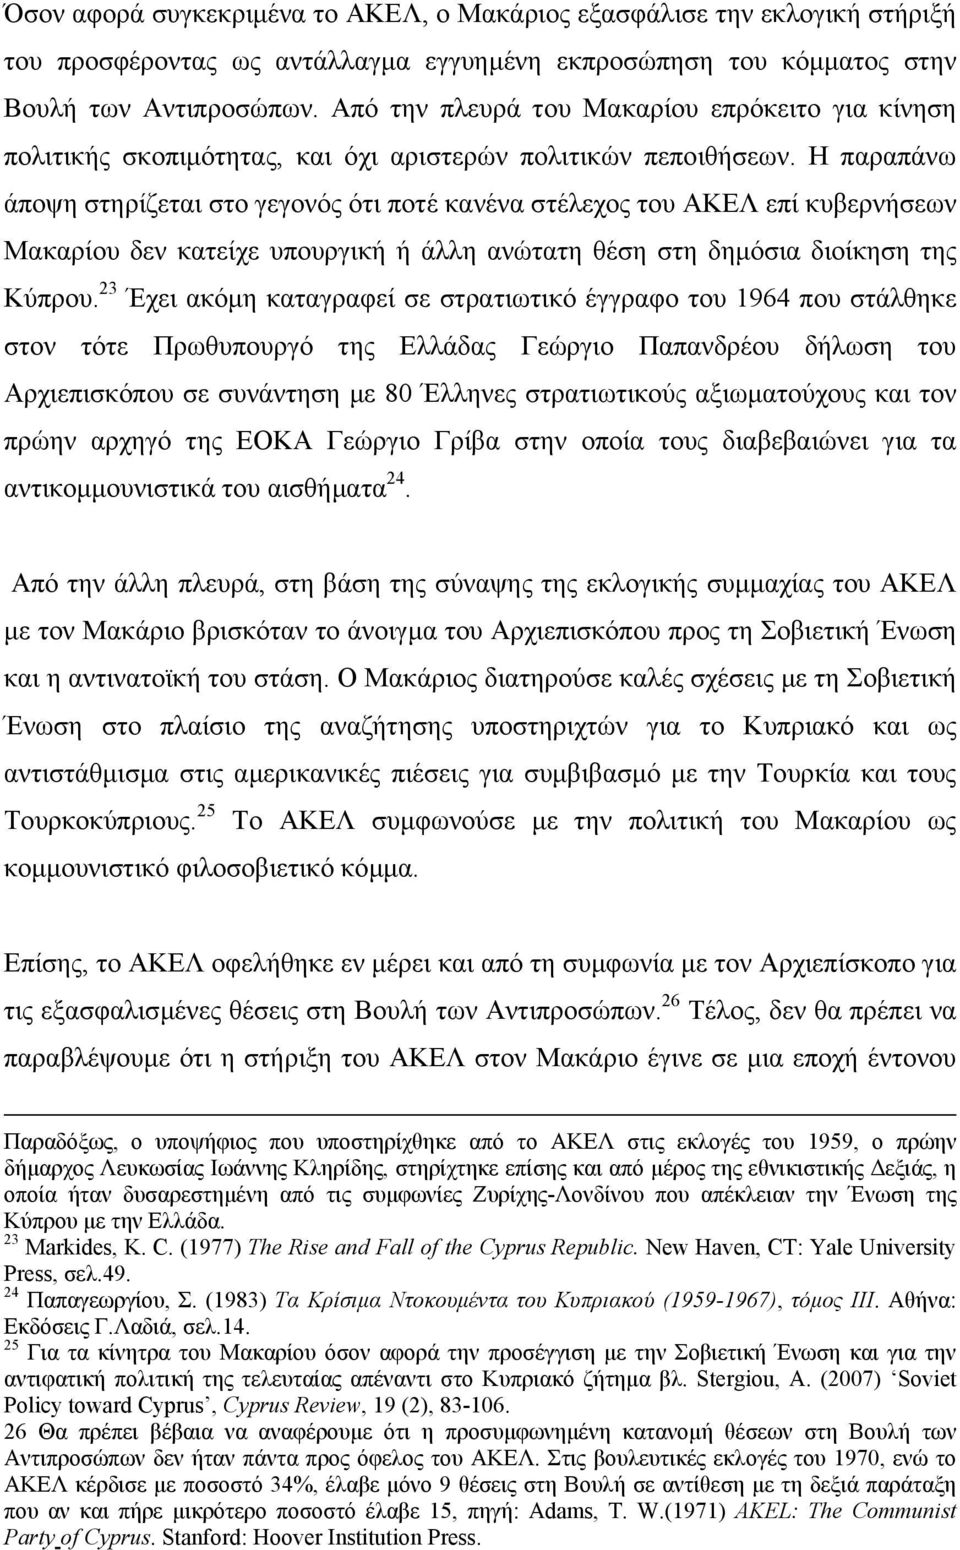 Η παραπάνω άποψη στηρίζεται στο γεγονός ότι ποτέ κανένα στέλεχος του ΑΚΕΛ επί κυβερνήσεων Μακαρίου δεν κατείχε υπουργική ή άλλη ανώτατη θέση στη δηµόσια διοίκηση της Κύπρου.